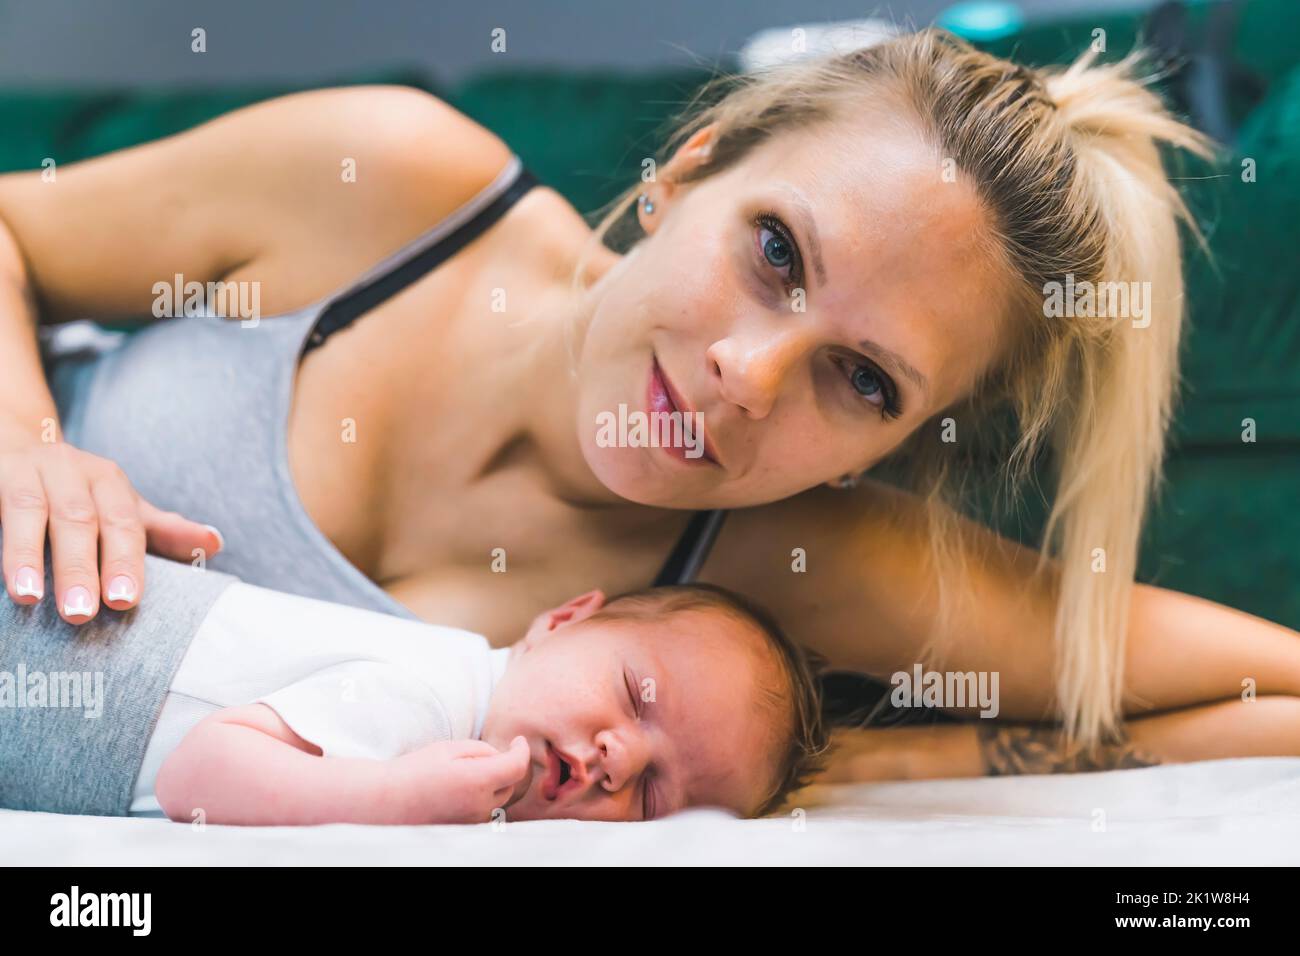 Weiße blonde Frau, die auf ihrer Seite auf dem Boden liegt und sich mit ihrem neugeborenen Jungen kuschelt und mit einem Lächeln in die Kamera schaut. Stolze, liebevolle Mutter. Horizontale Innenaufnahme. Hochwertige Fotos Stockfoto